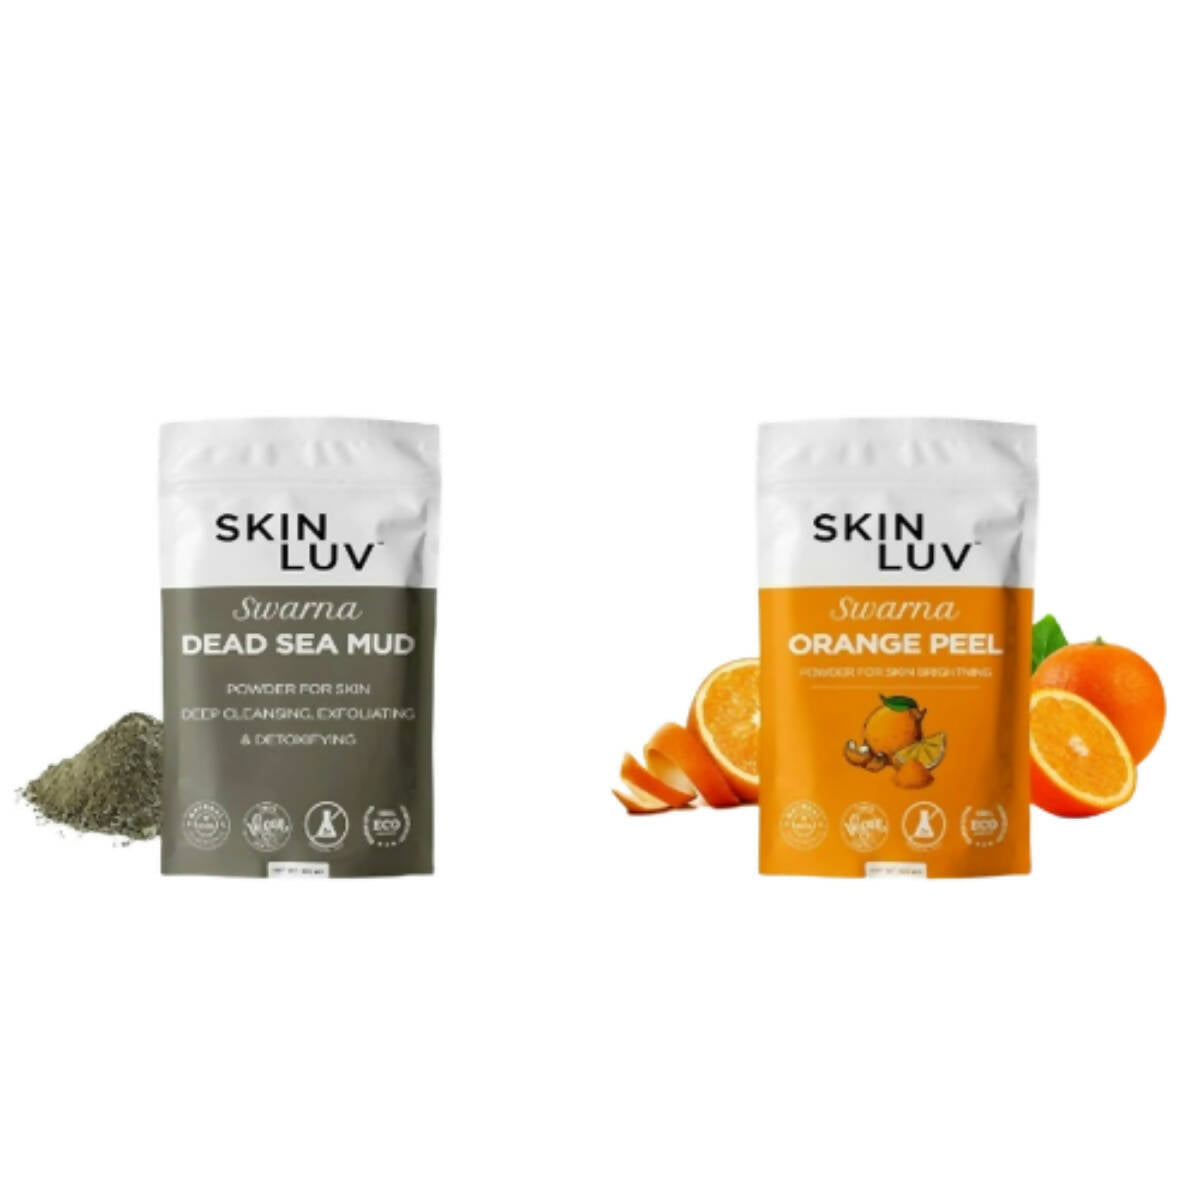 SkinLuv Swarna Dead Sea Mud Powder And Orange Peel Powder Combo - Distacart